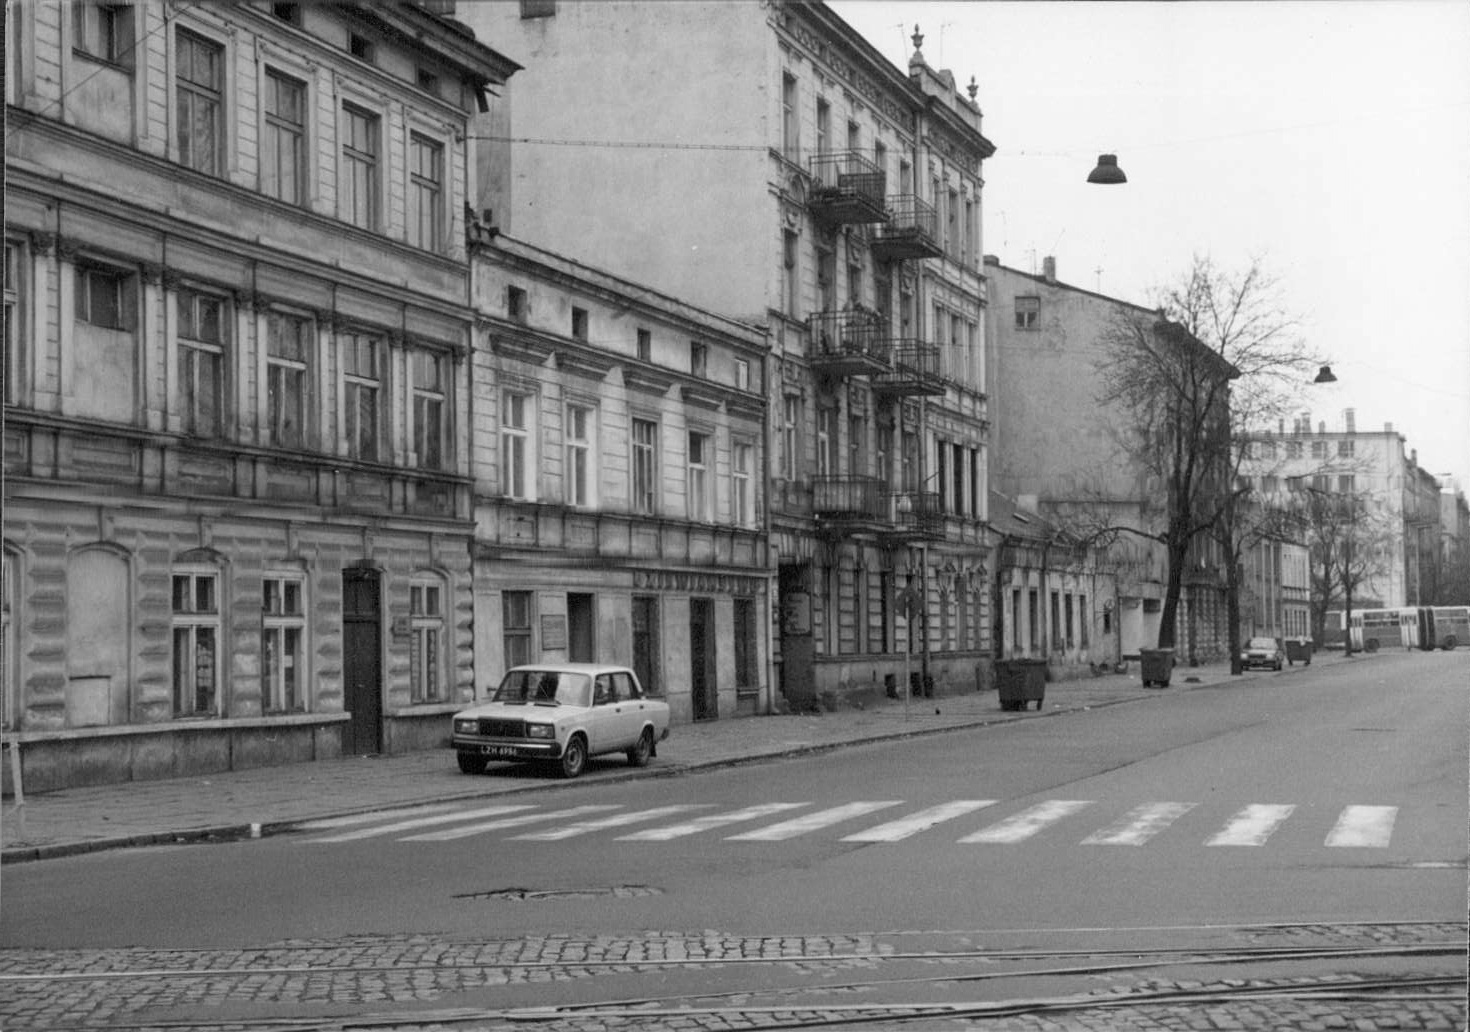 Łódź street scene, 1990